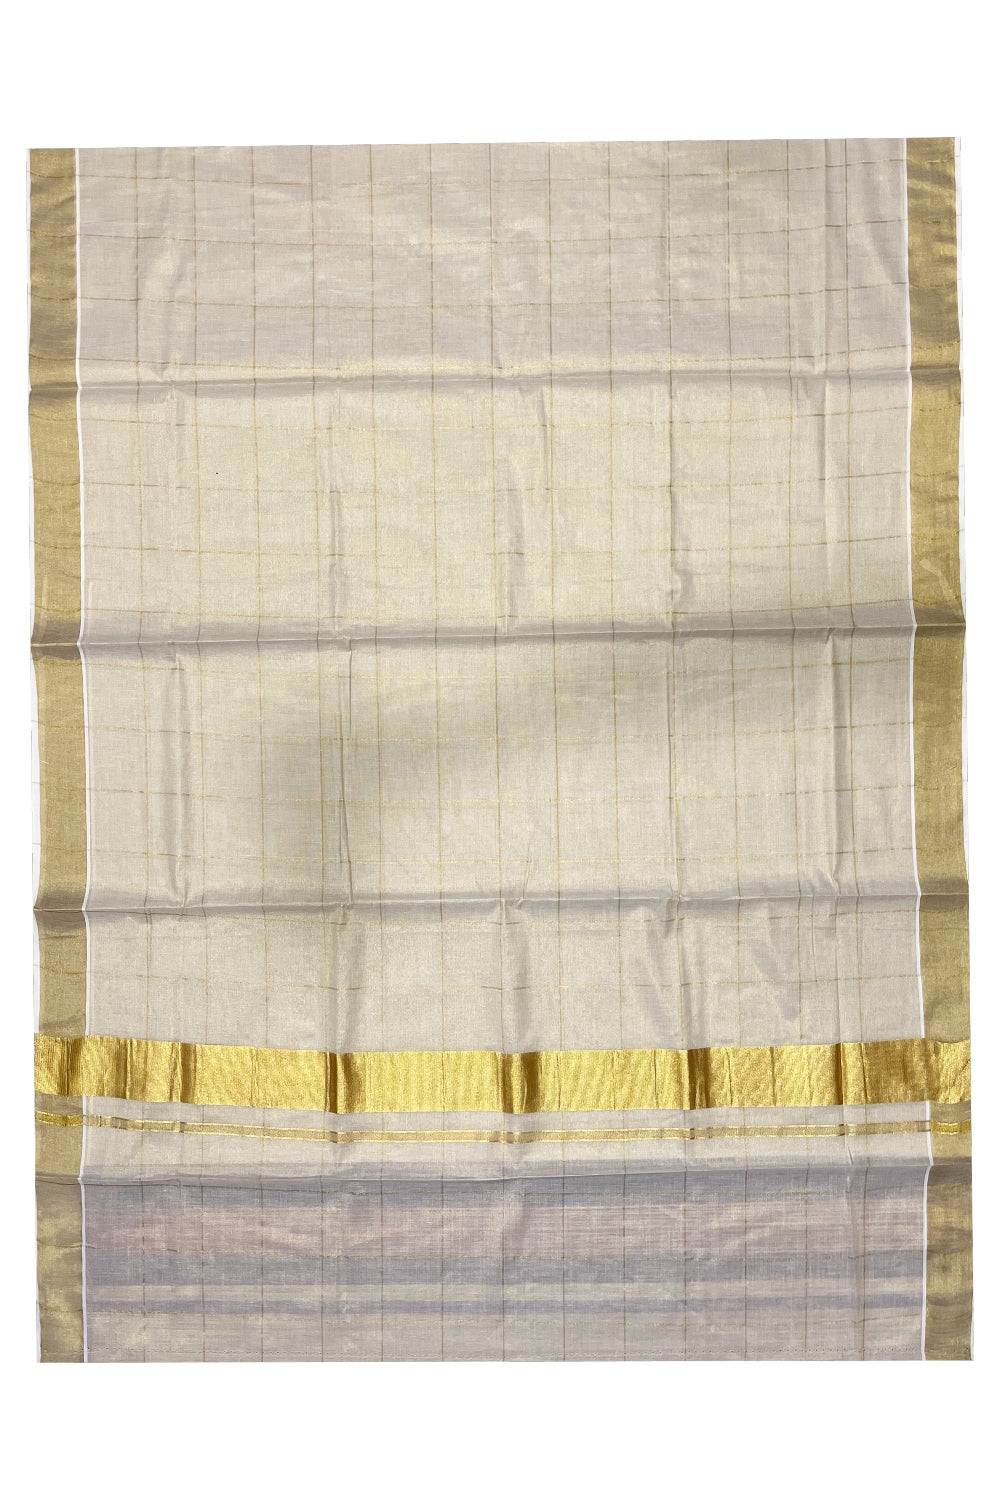 Southloom Kerala Tissue Kasavu Big Check Saree With 3 inch Pallu